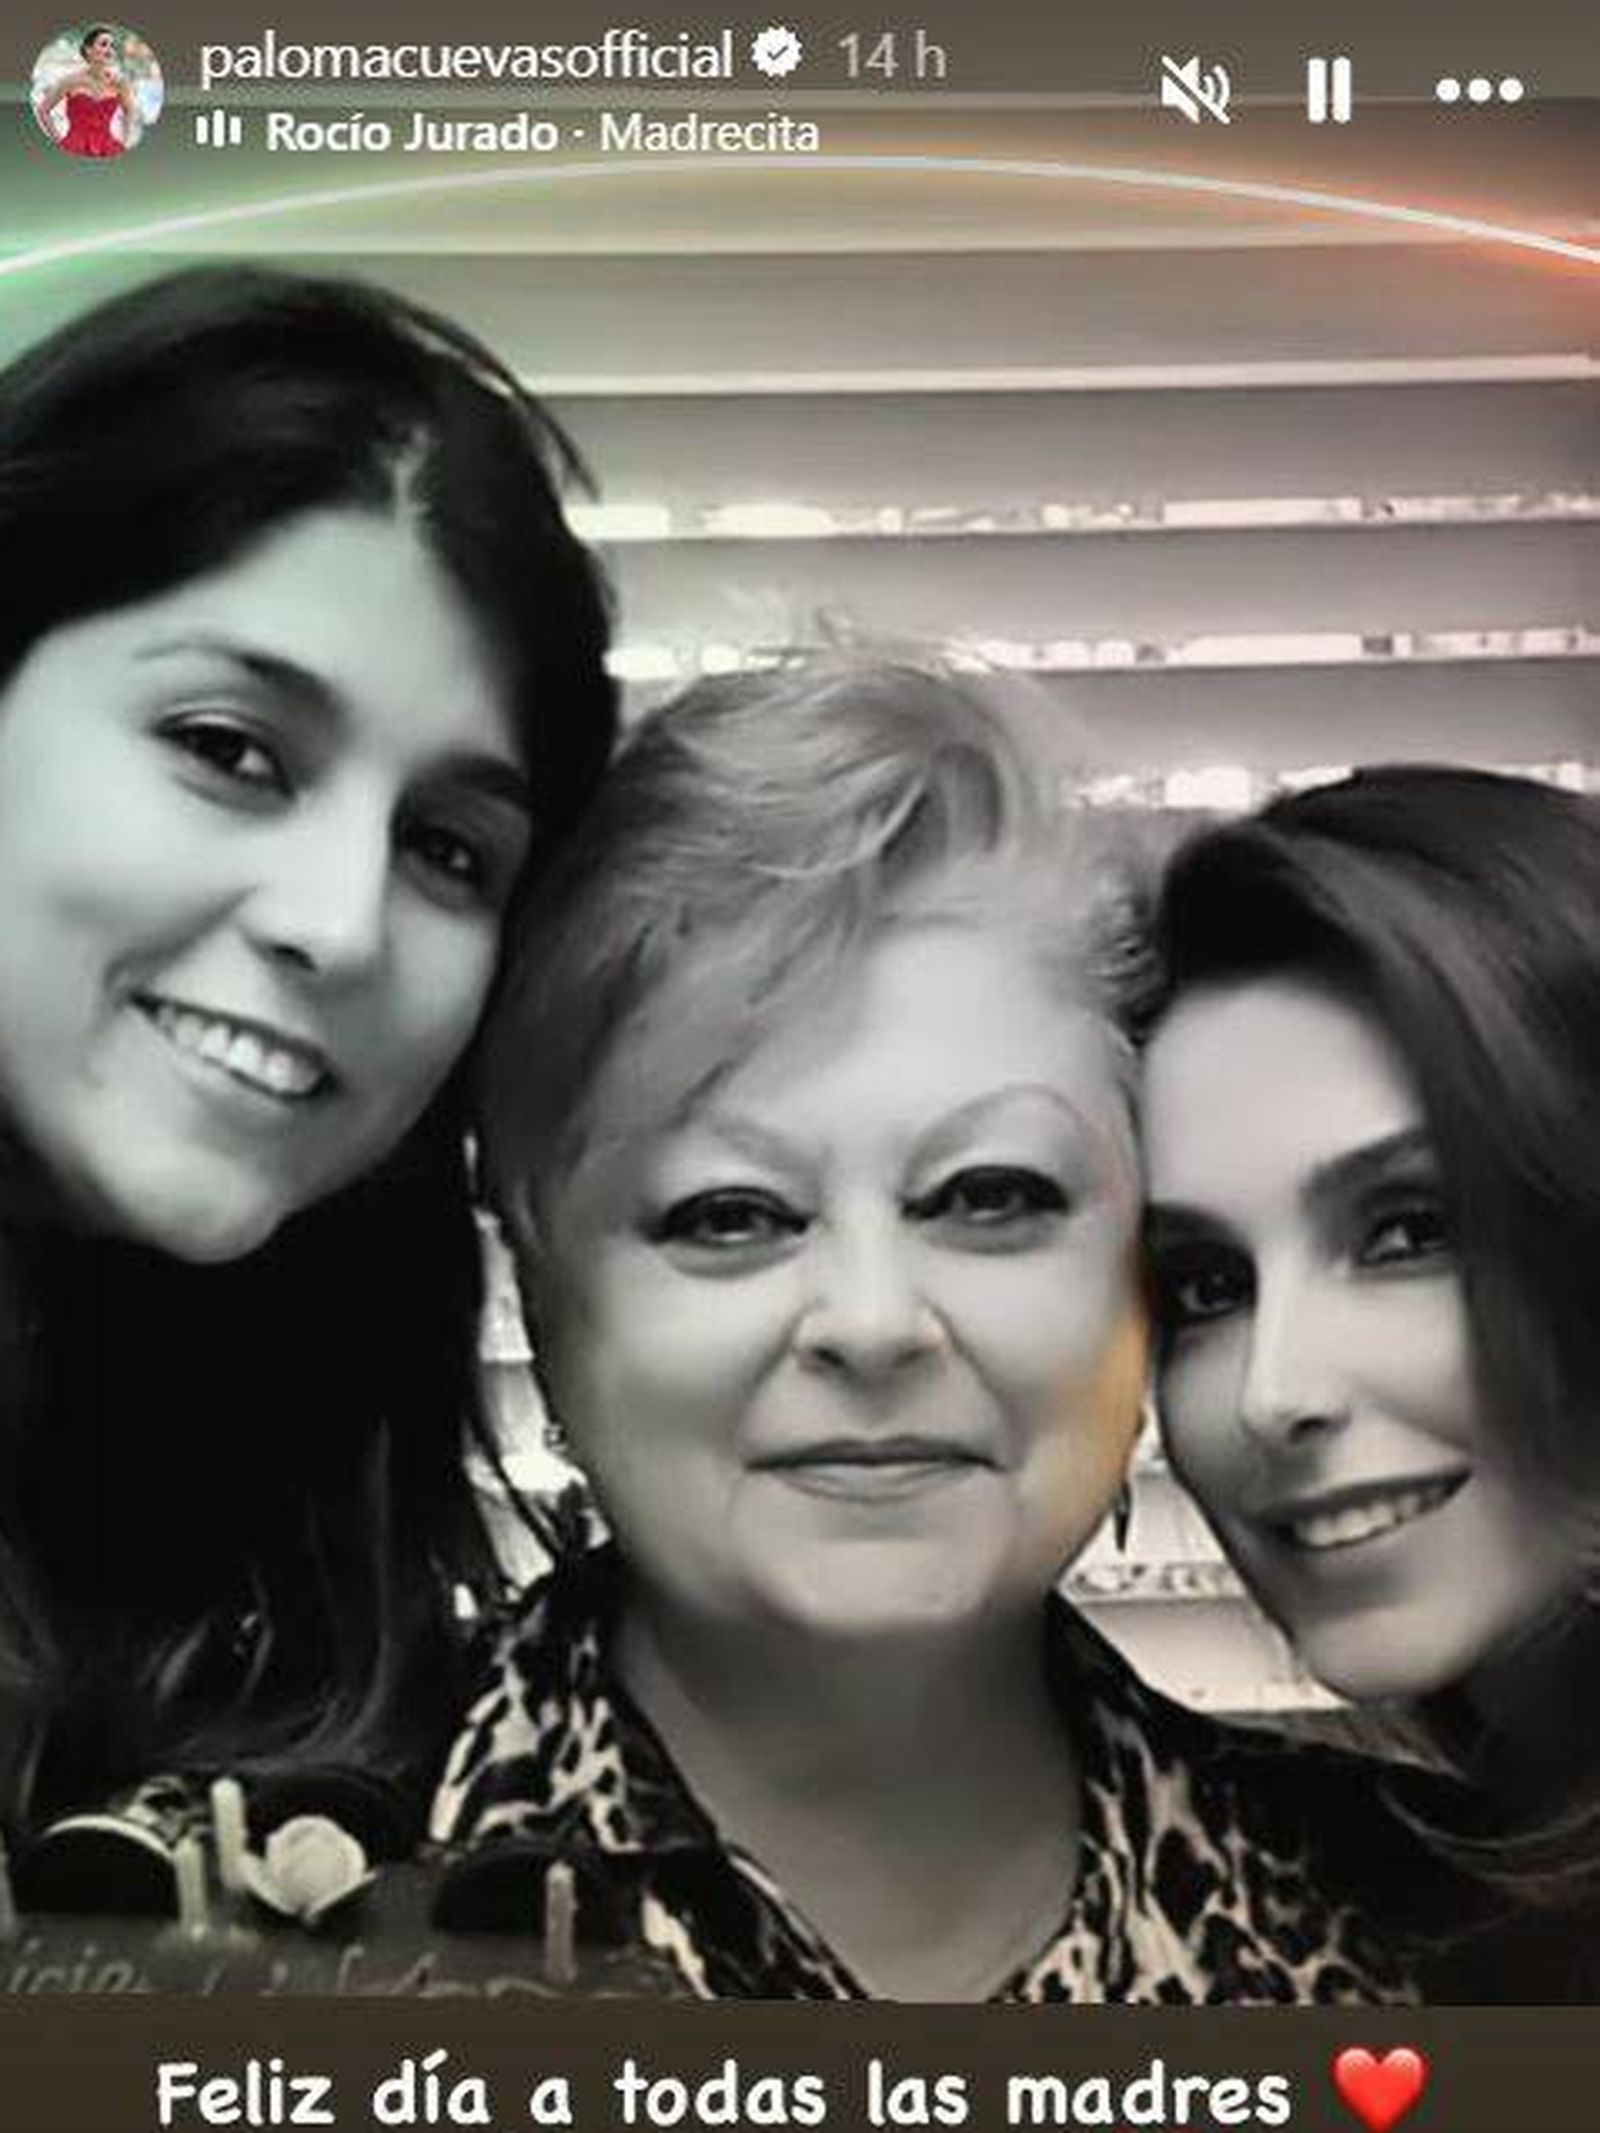 Paloma Cuevas ha compartido varias fotografías familiares. (Instagram/@palomacuevasofficial)